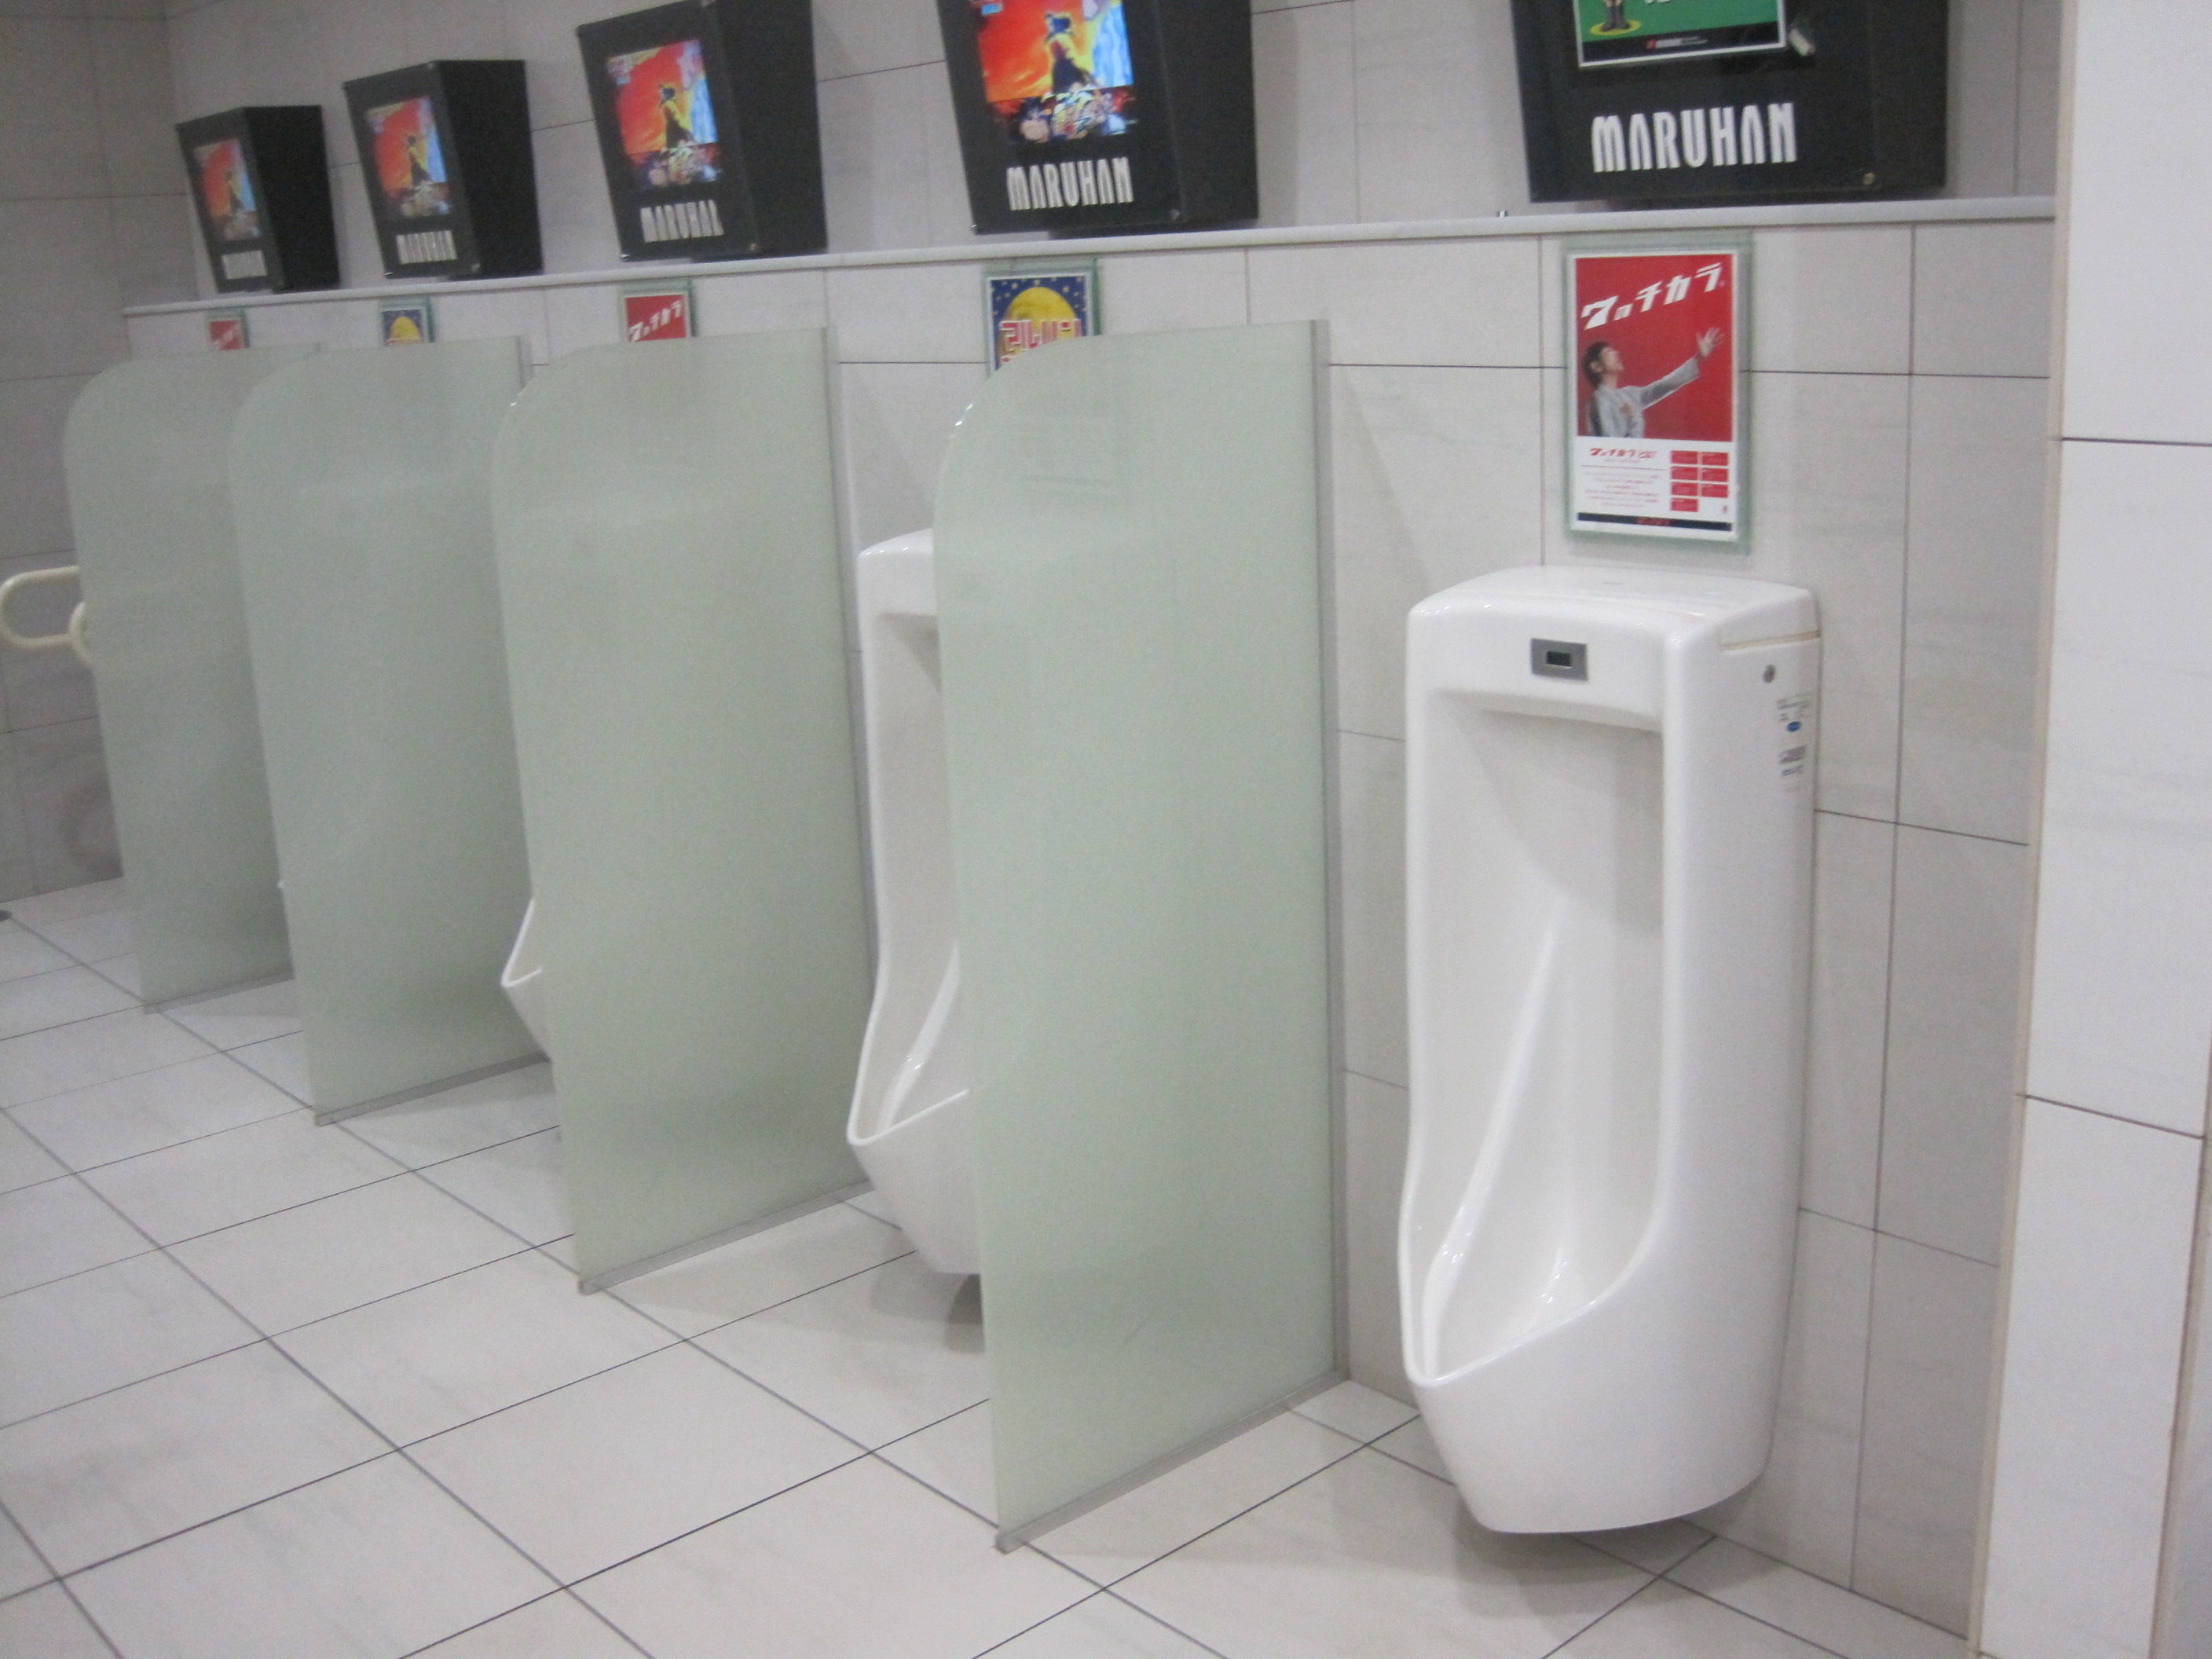 トイレ設備調査日記atosatu パチンコマルハン旭川永山店スロットコーナー付近トイレ